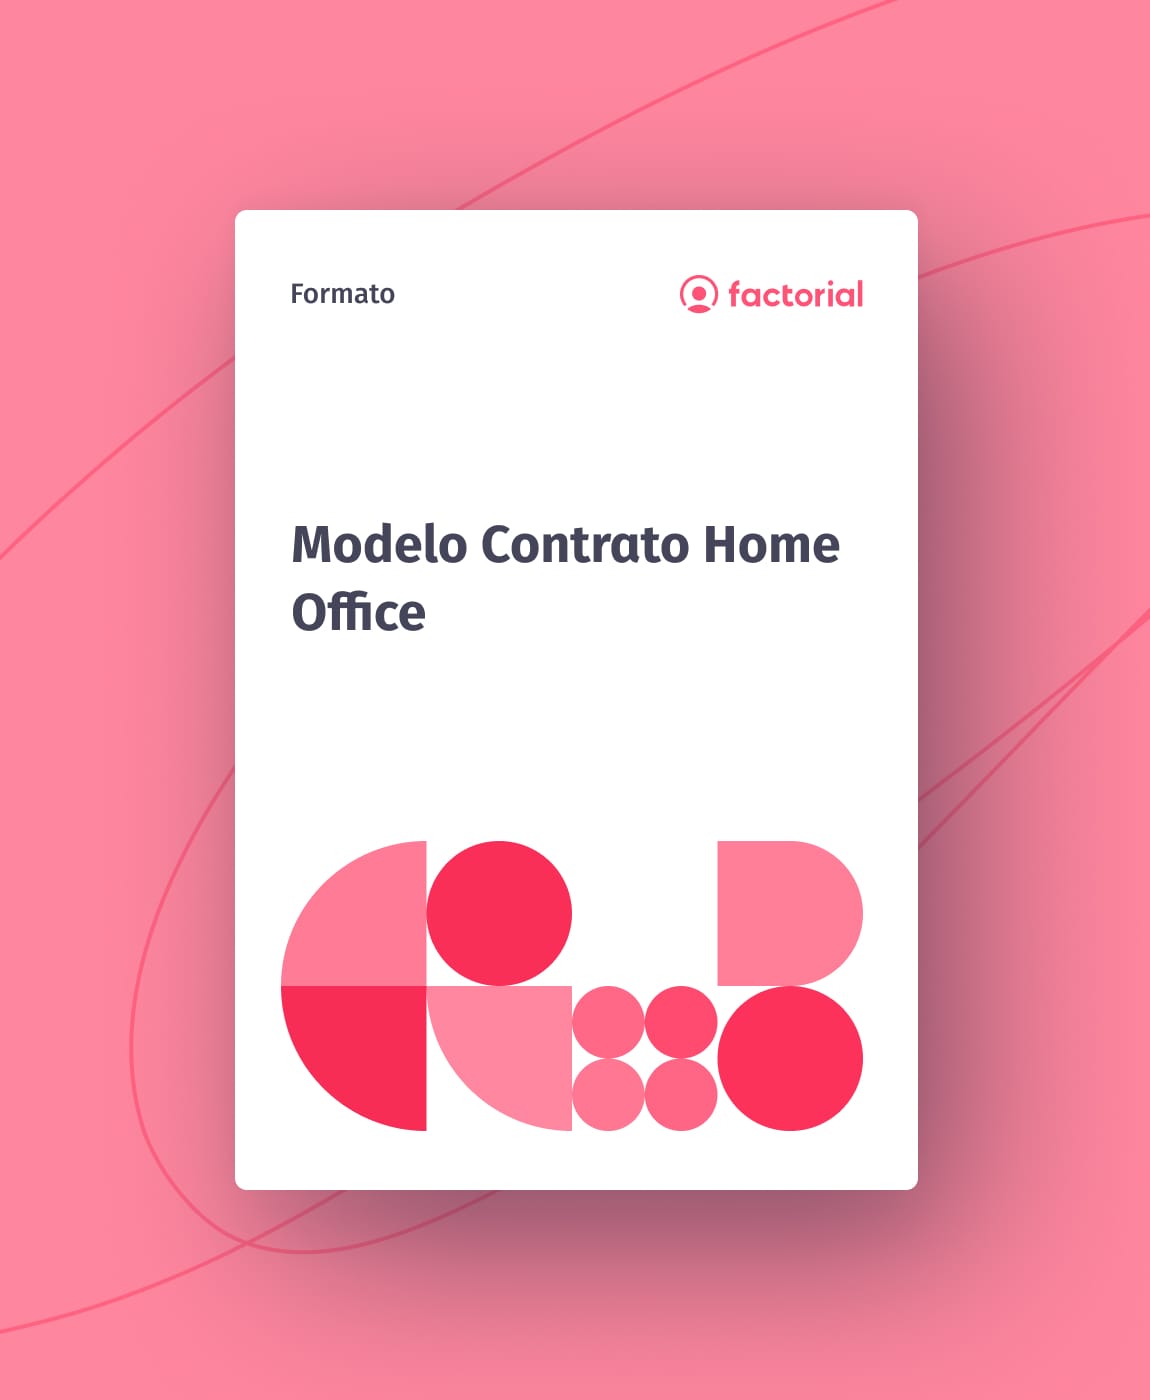 Modelo Contrato Home Office